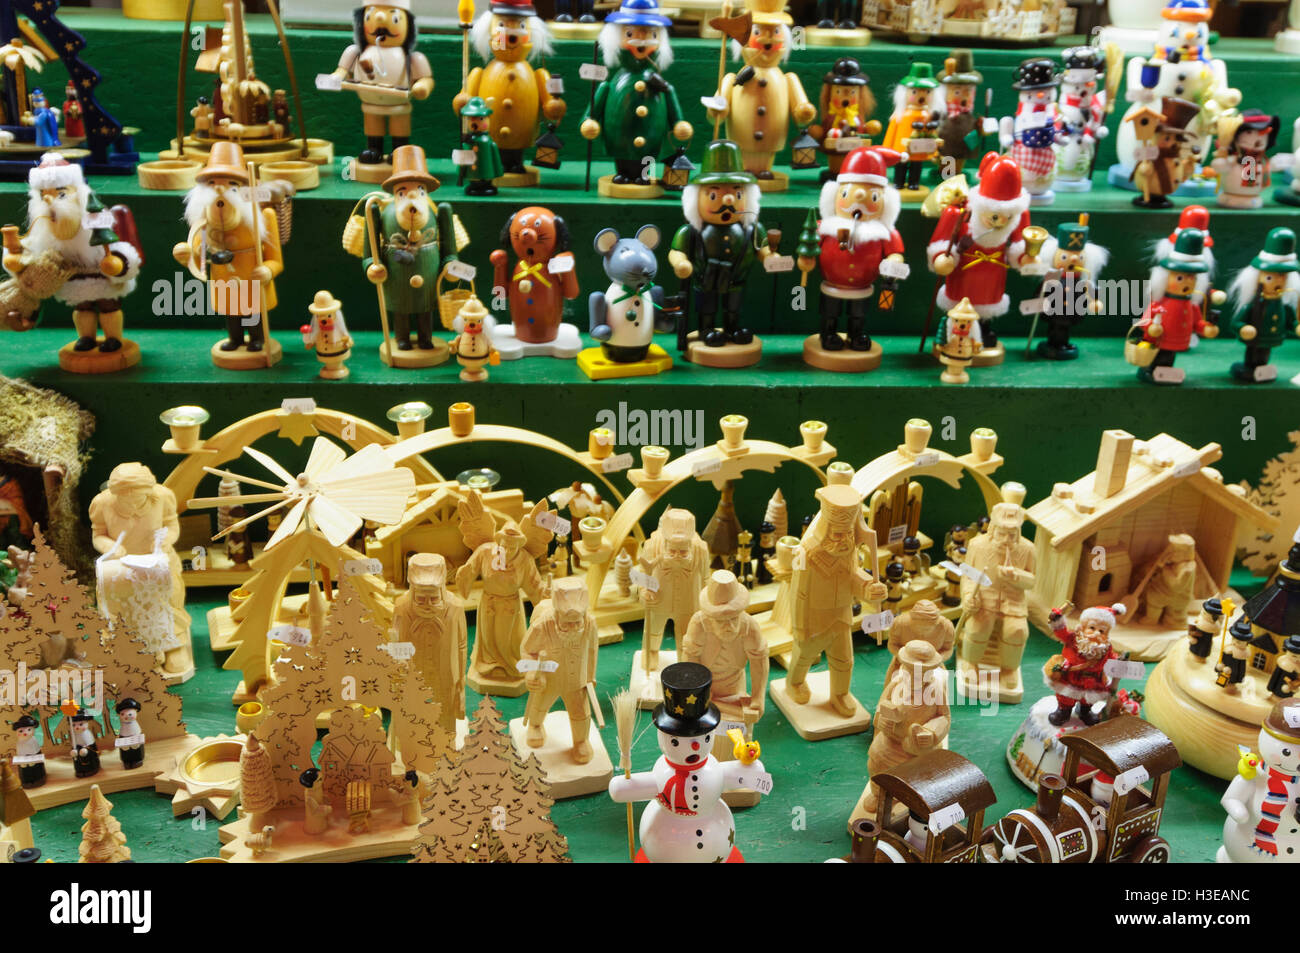 Holzschnitzereien aus dem Erzgebirge auf ein Weihnachten Markt,  Deutschland, Sachsen, Sachse Stockfotografie - Alamy